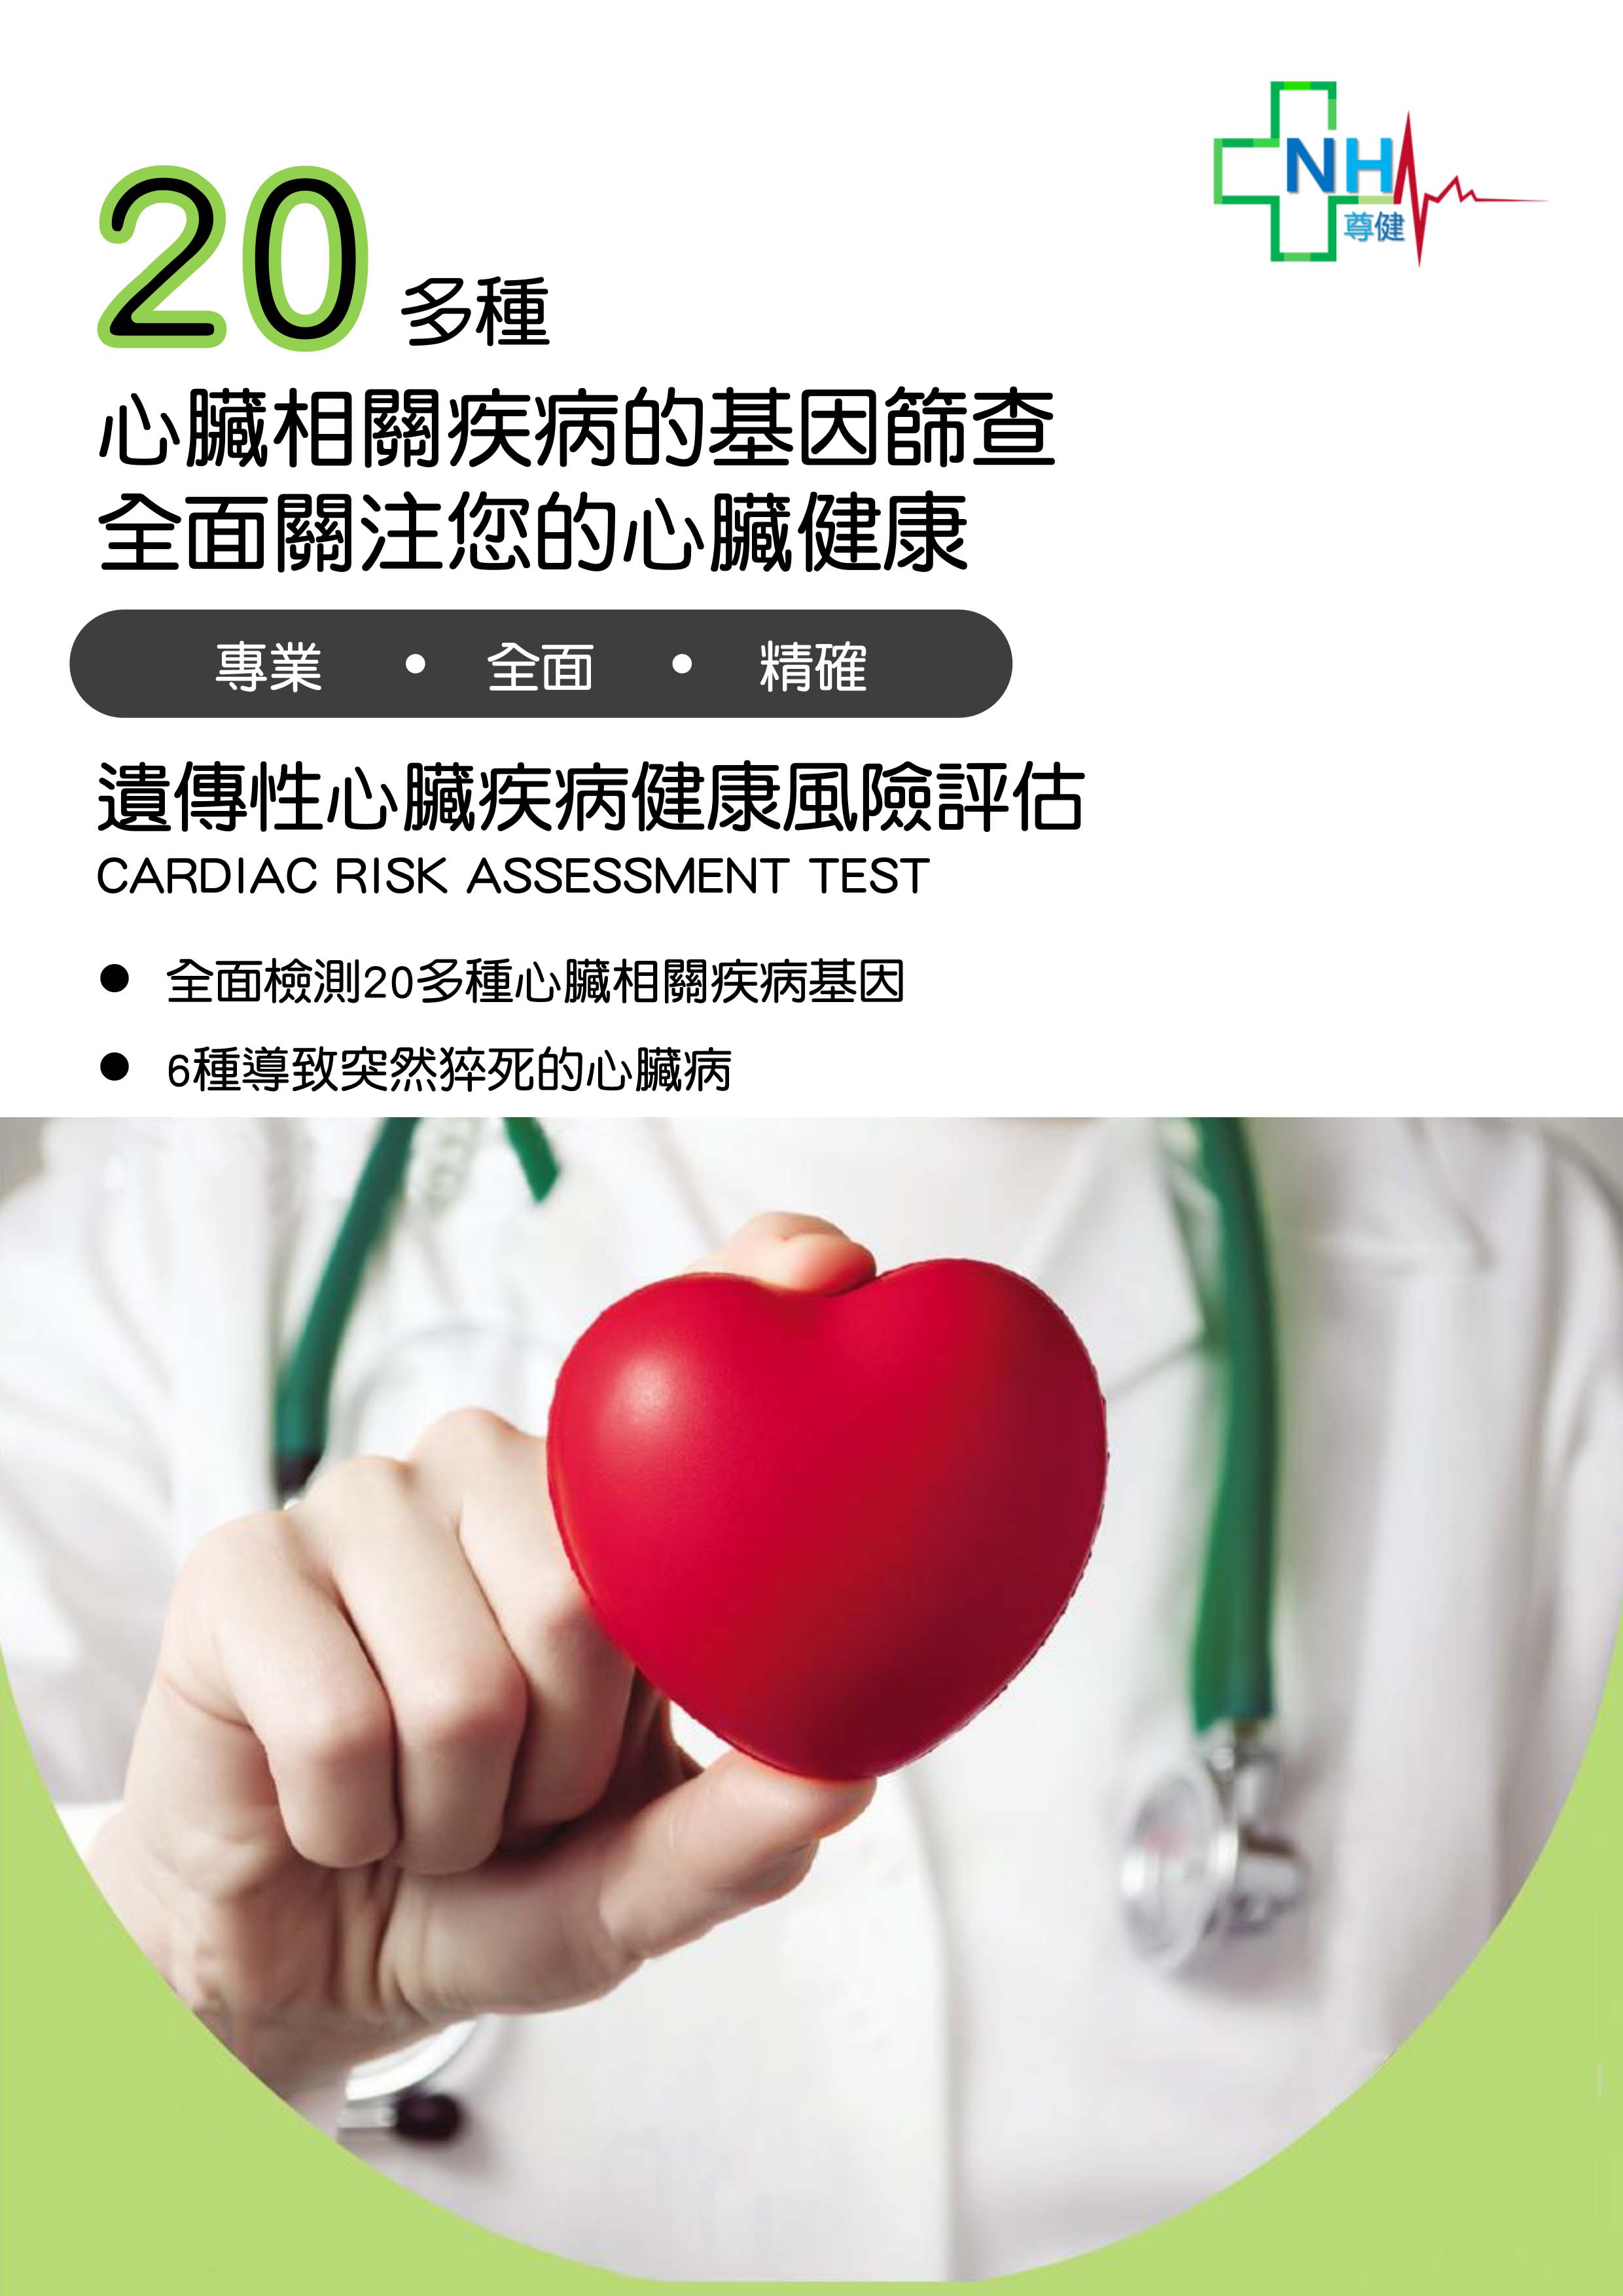 cardiac-risk-assessment-test-1.jpg